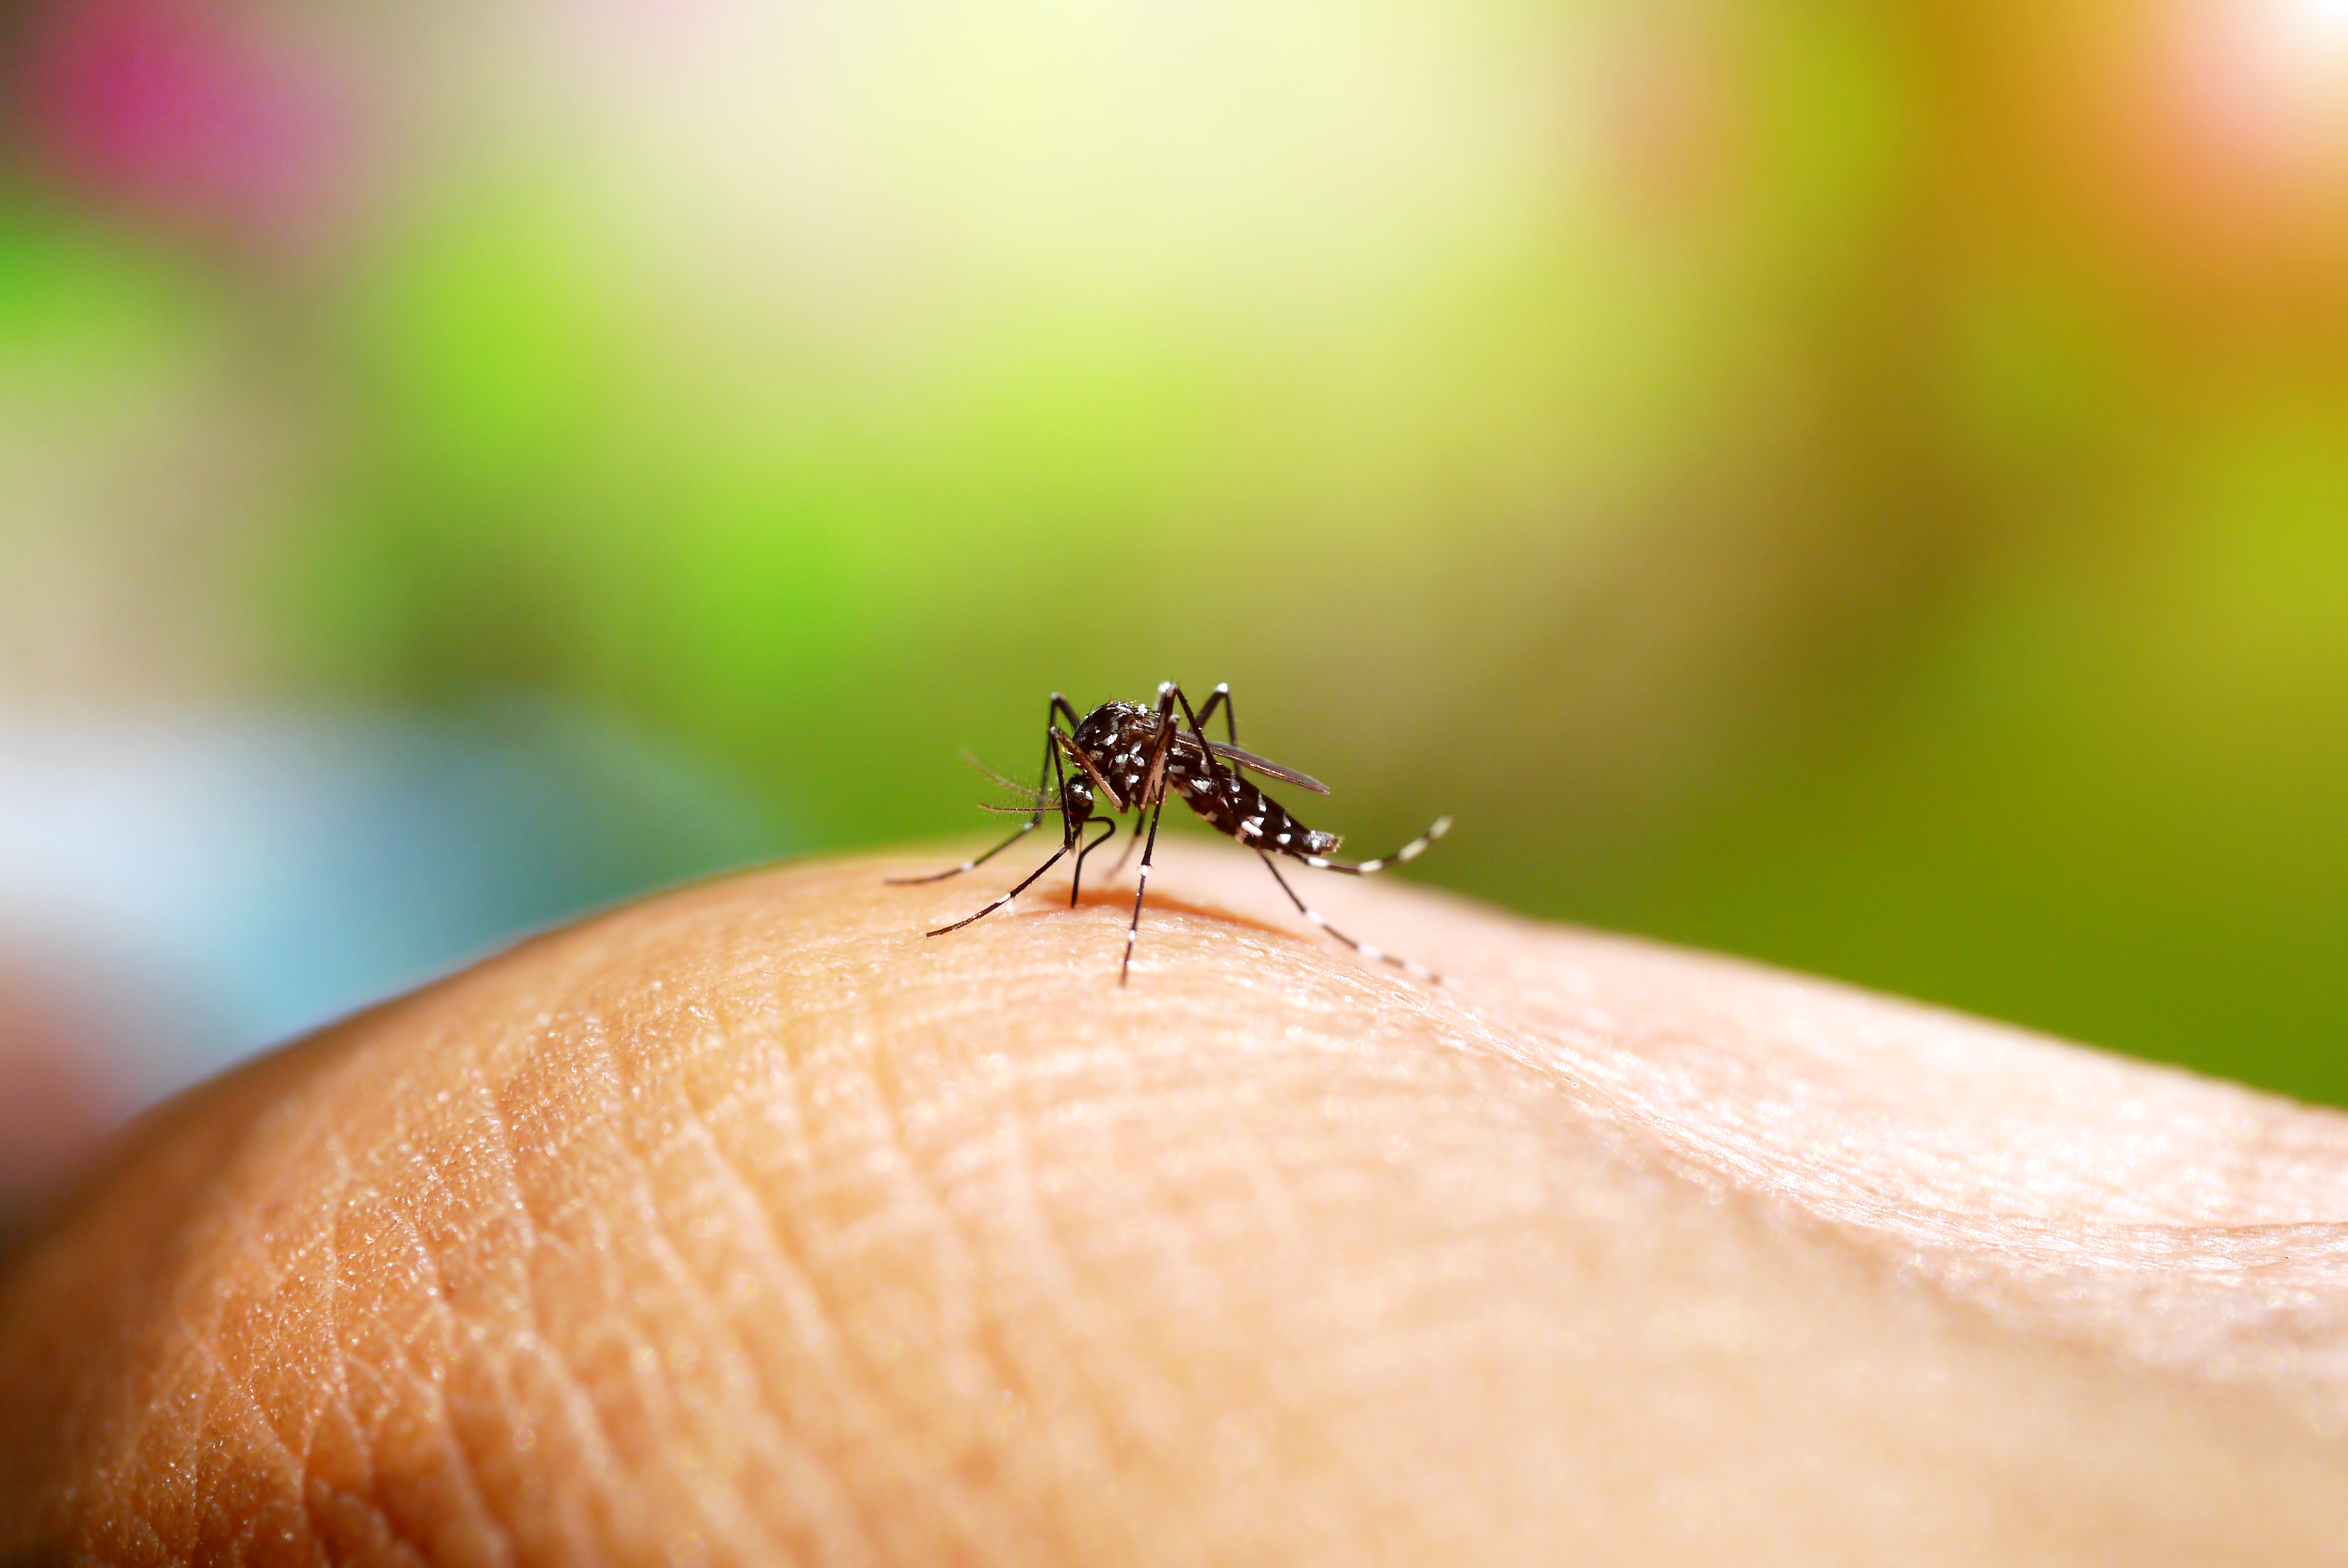  Como ocorre a transmissão da dengue?